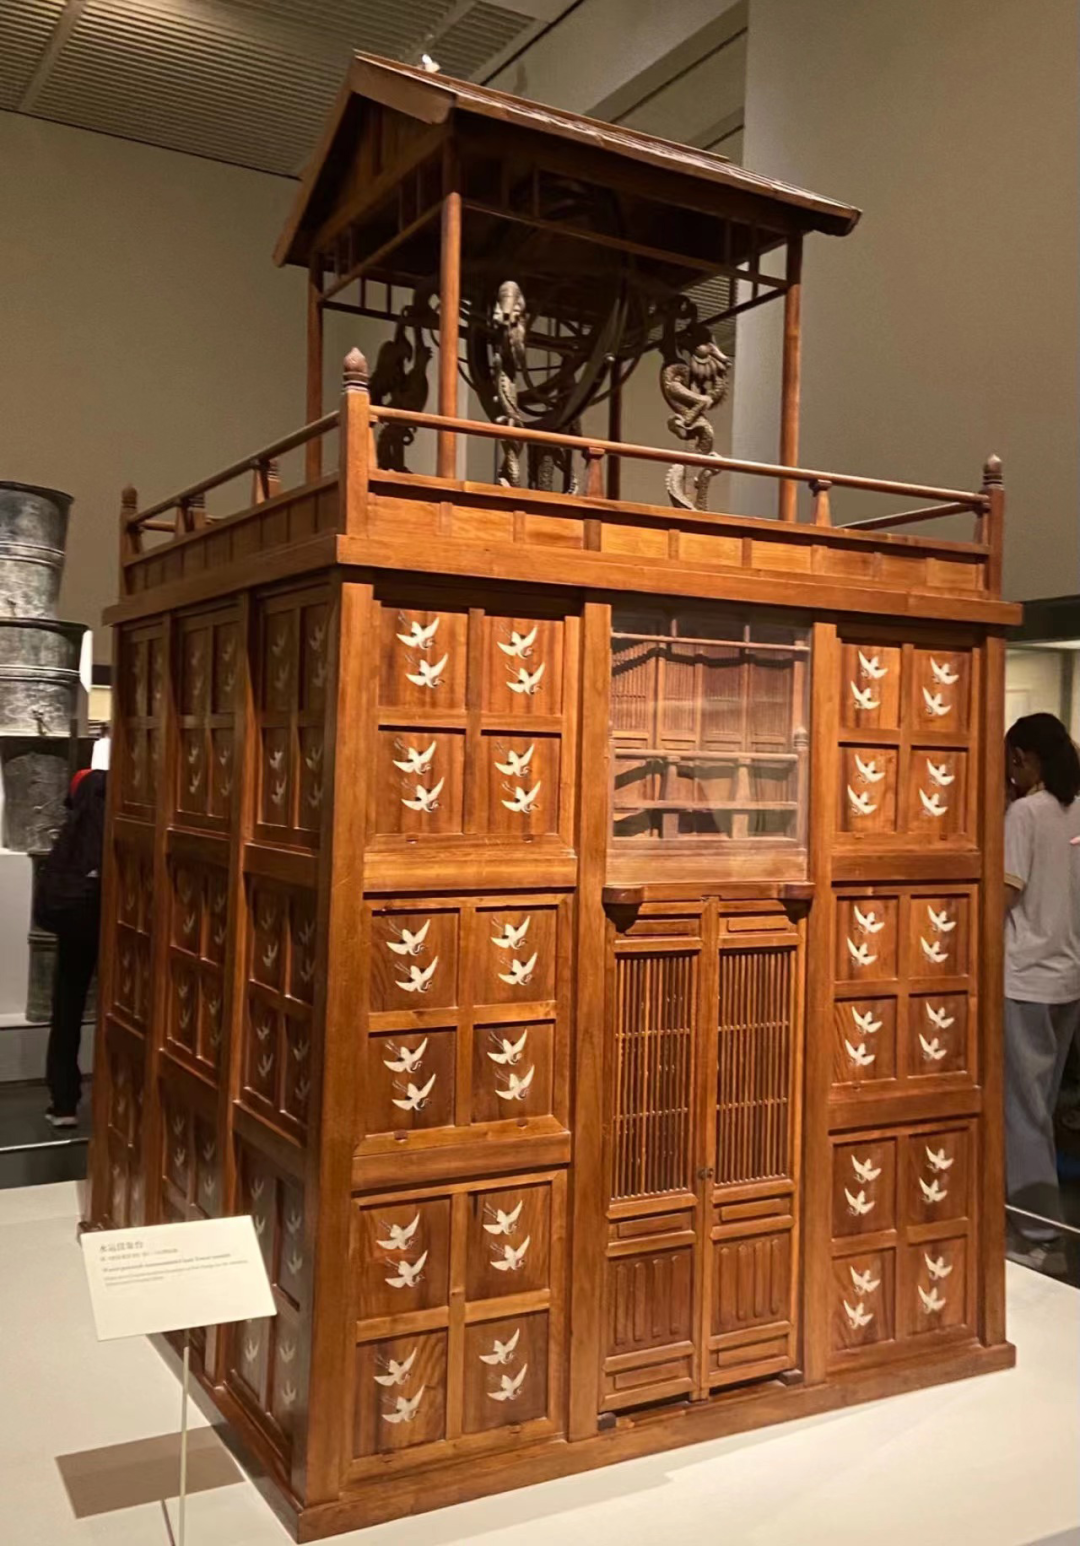 水运浑天仪,最早发明于唐代,摄于中国国家博物馆展厅